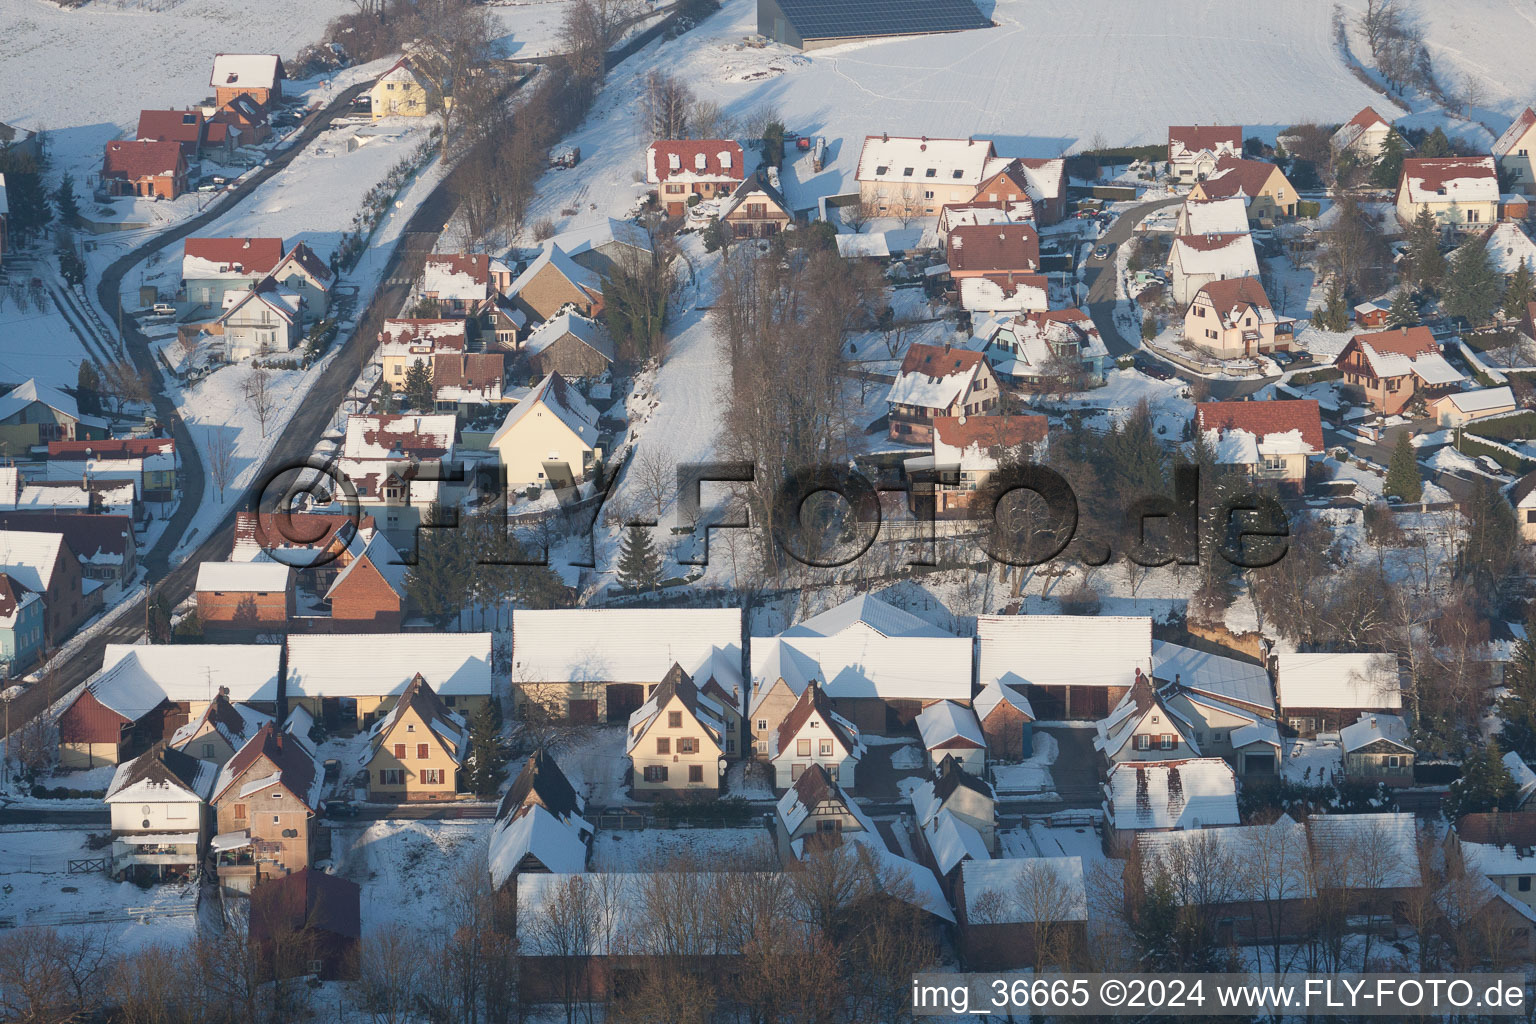 En hiver quand il y a de la neige à Neewiller-près-Lauterbourg dans le département Bas Rhin, France vu d'un drone